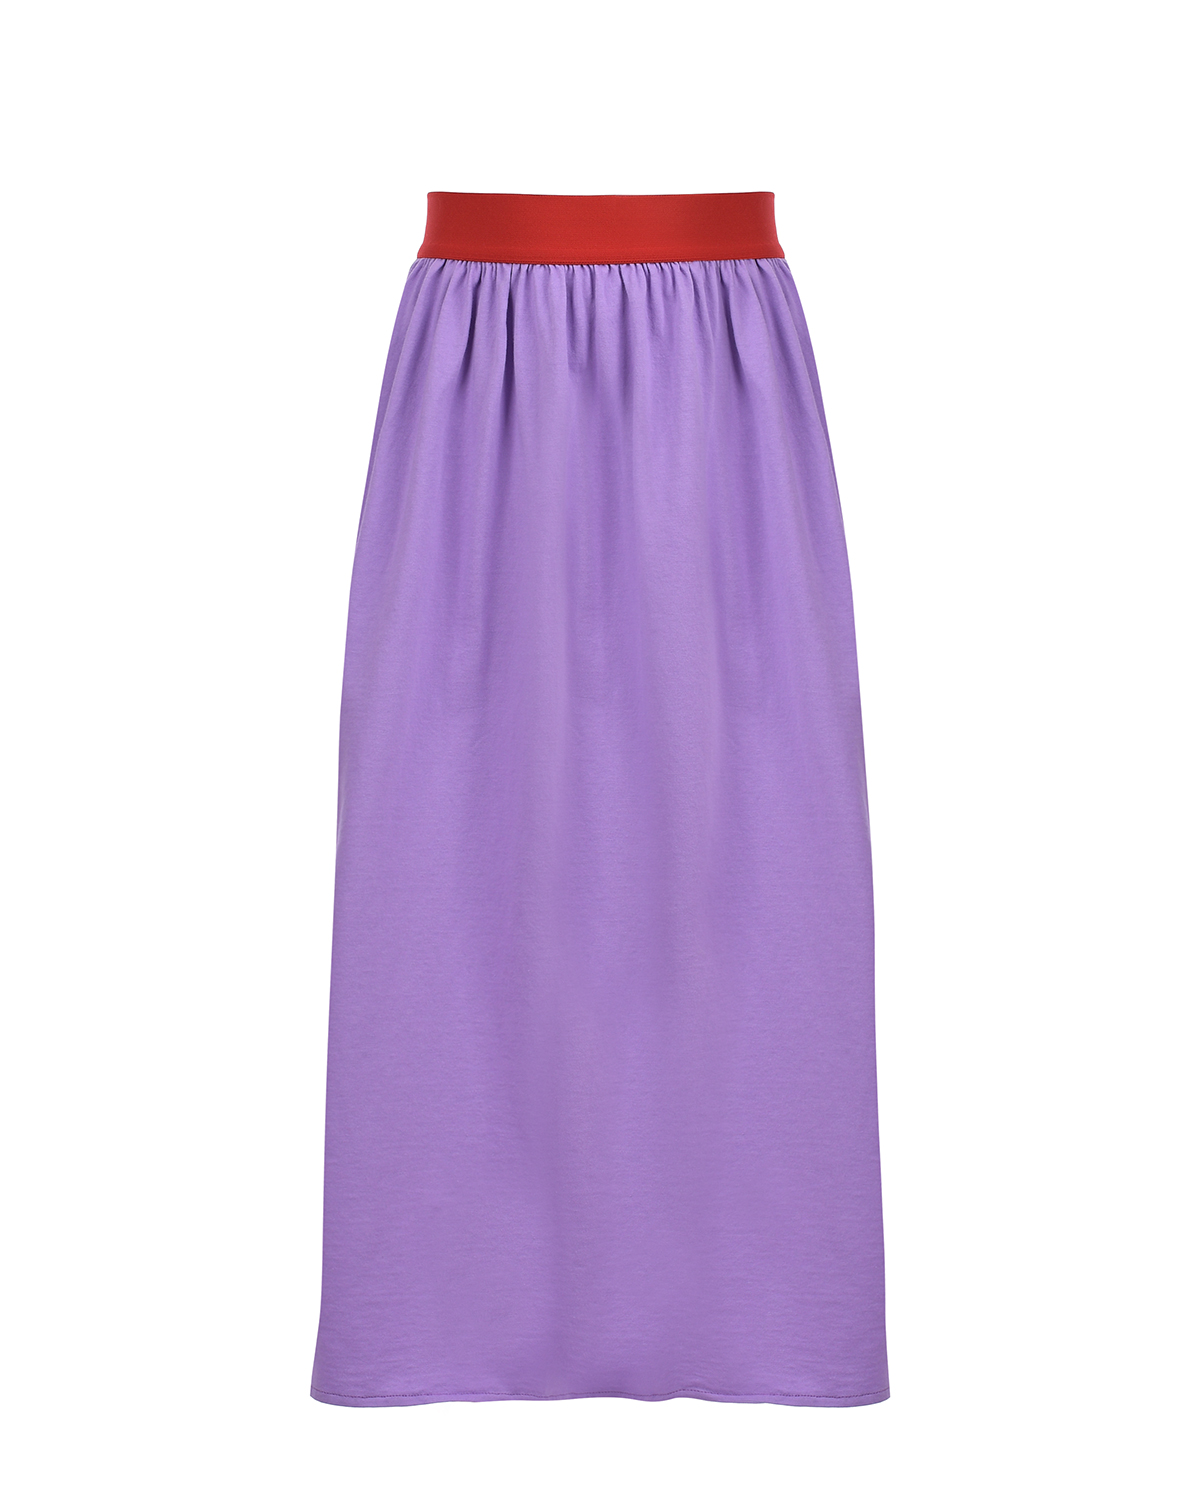 Юбка фиолетового цвета Yporque, размер 140 - фото 1